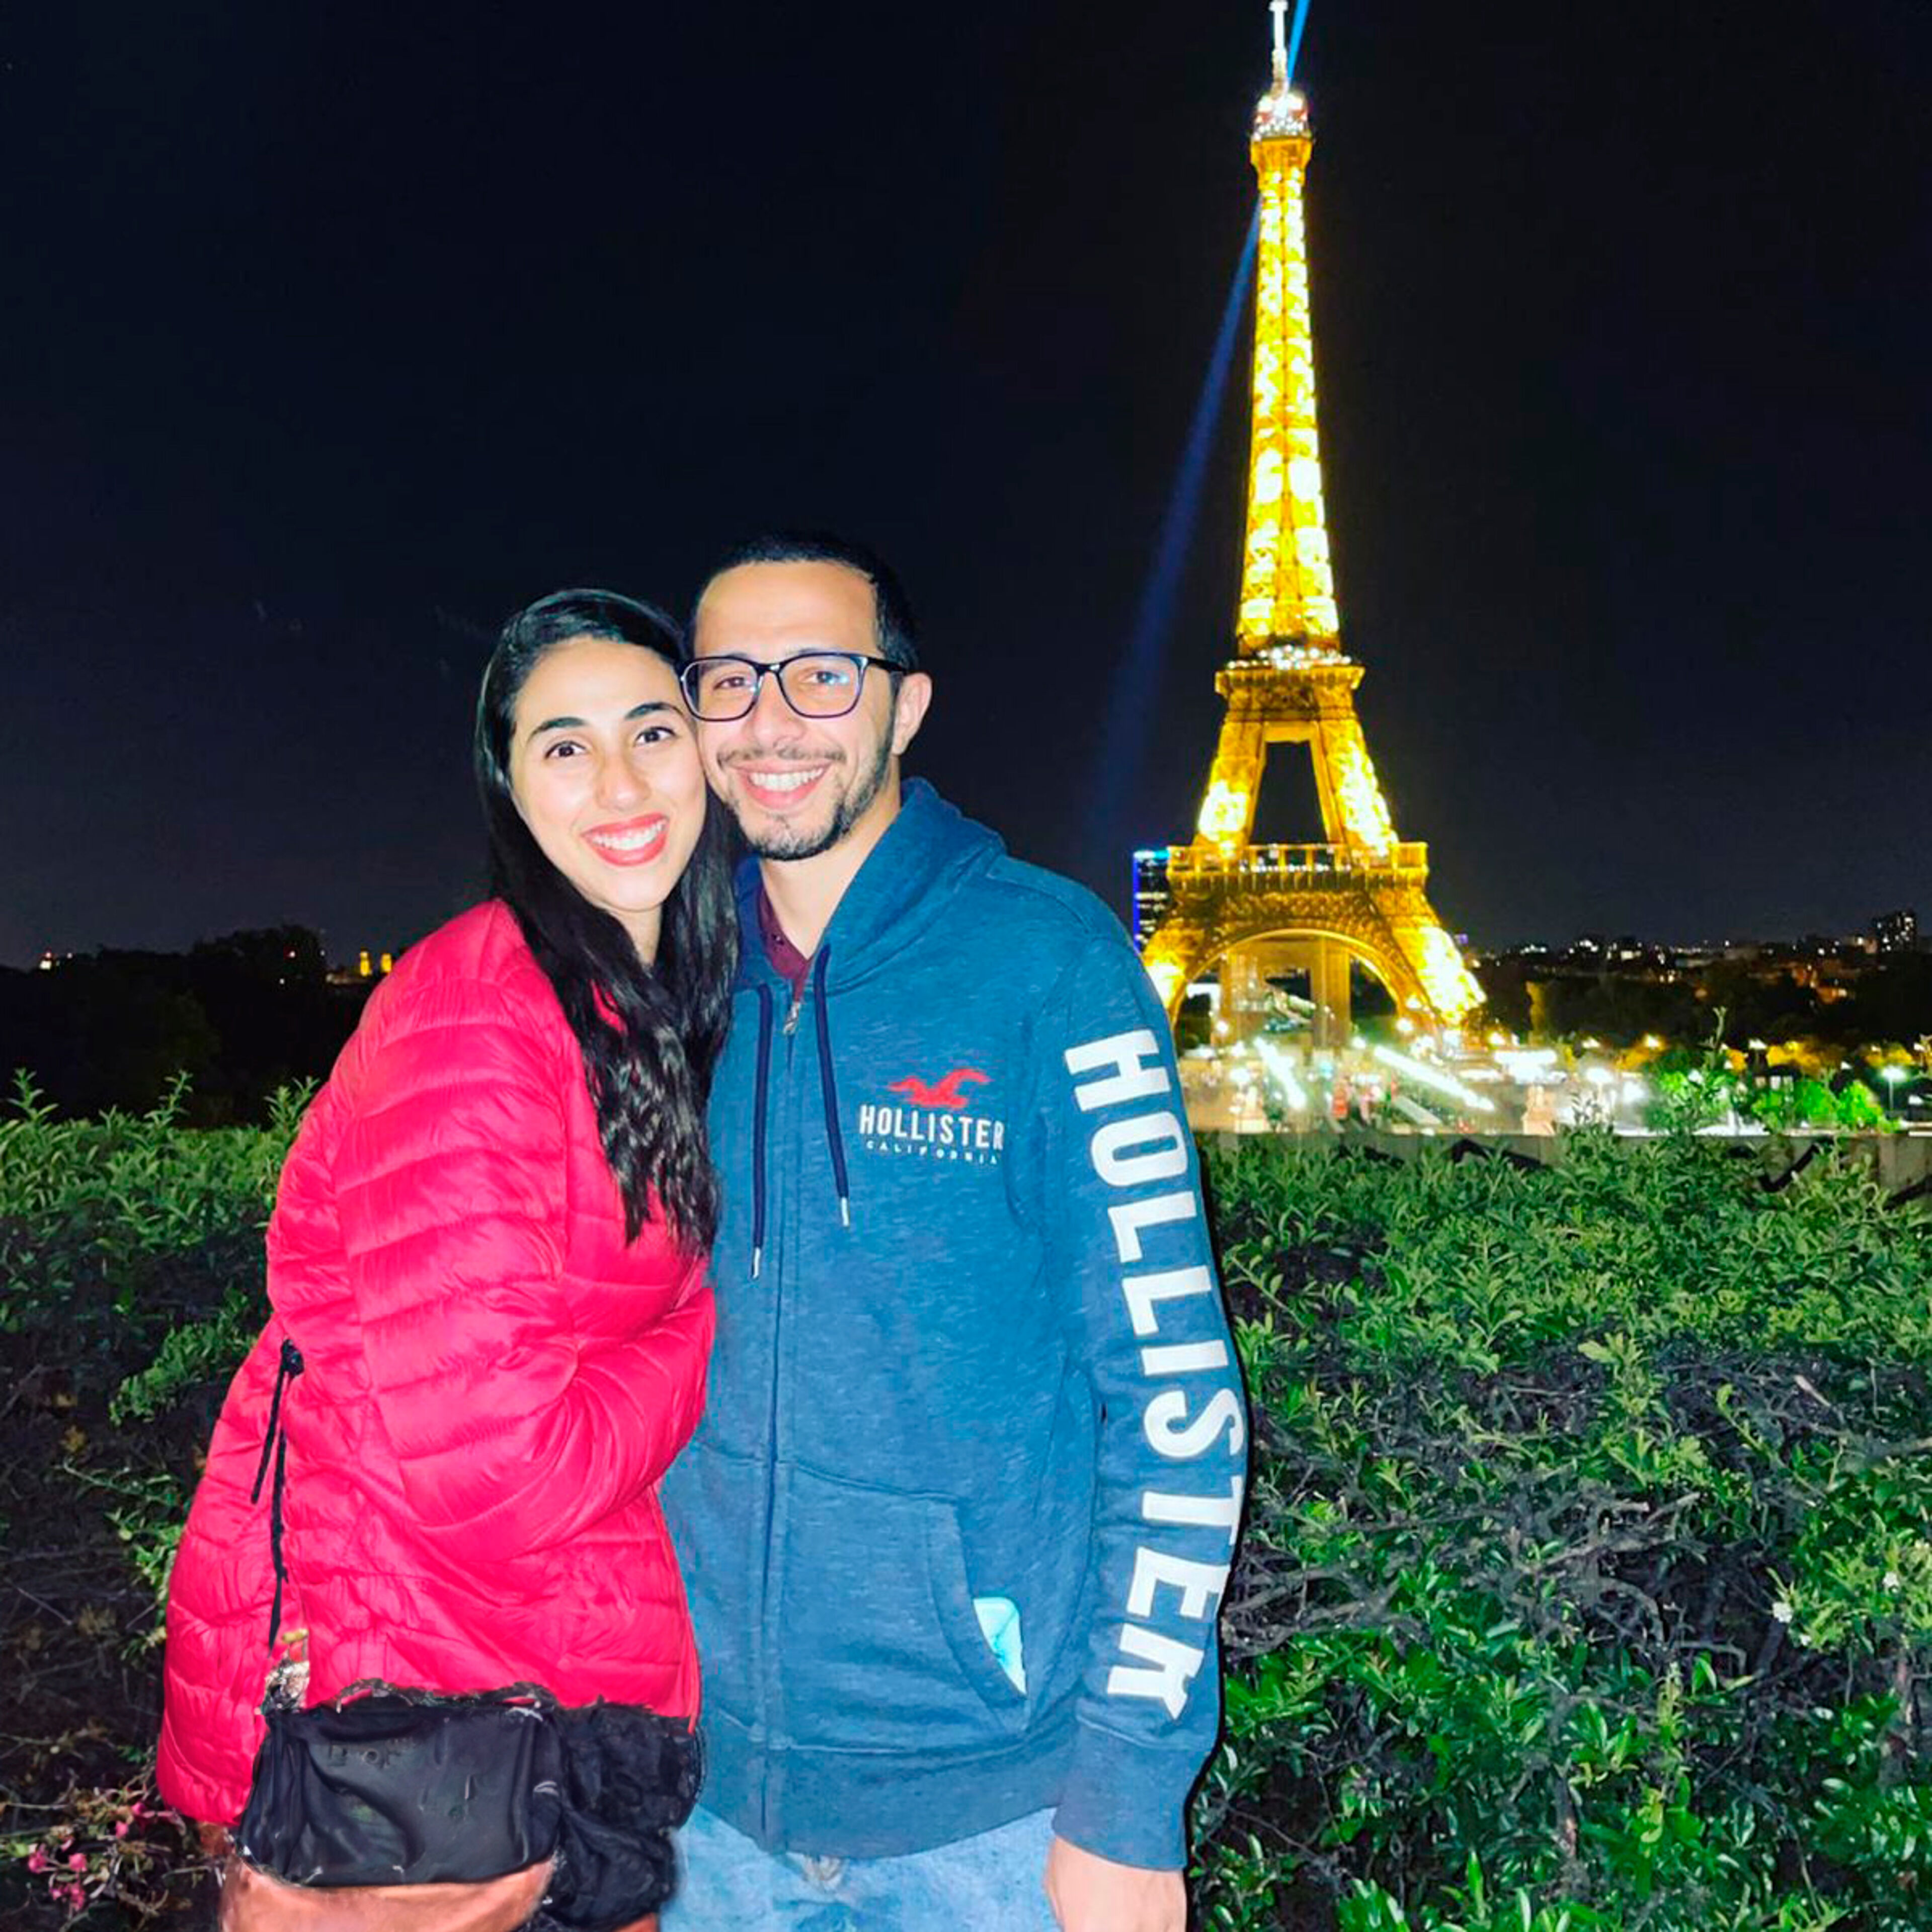 Un couple souriant pose pour une photo avec la Tour Eiffel illuminée en arrière-plan, mettant en valeur le monument emblématique de Paris la nuit.